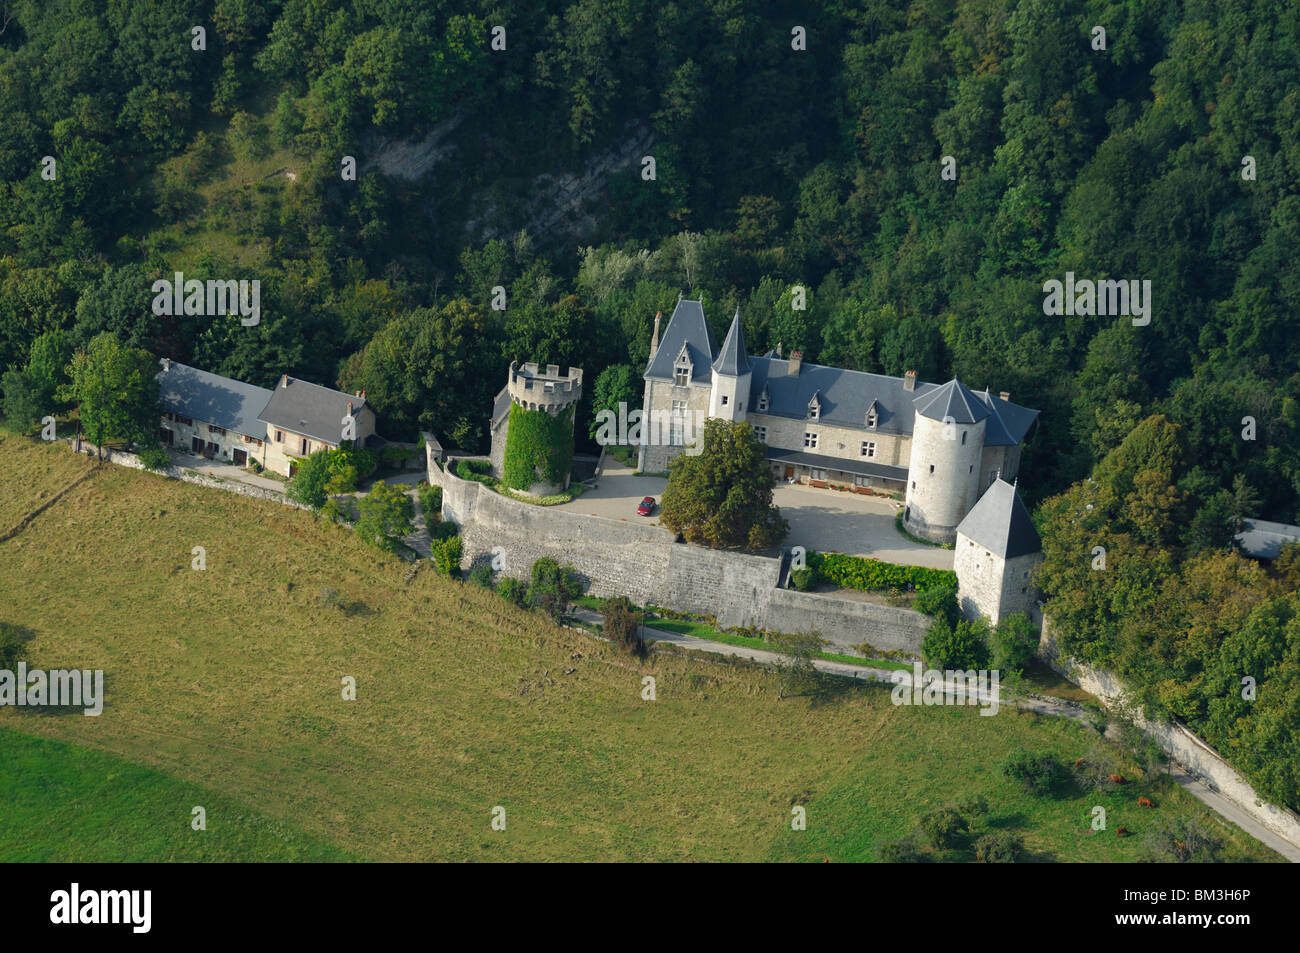 Vue aérienne du château de la Bâtie. Leysse. Savoie (Savoie), région Rhône-Alpes, Alpes, France Banque D'Images